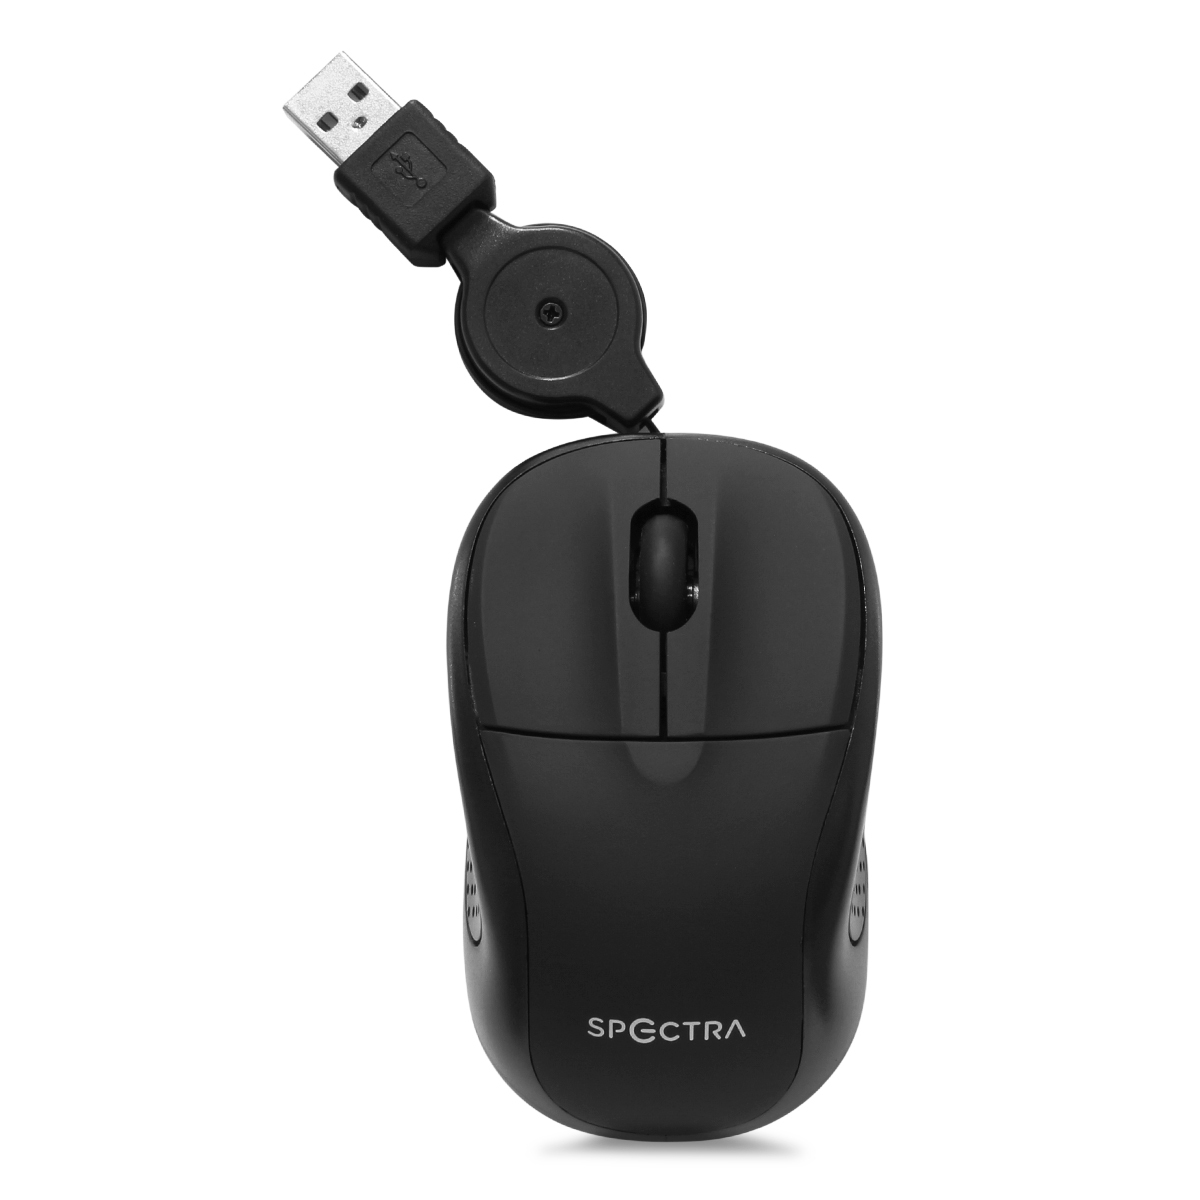 Mouse Alámbrico con Cable Retráctil Spectra SK-RF1955 / USB / Negro / PC / Laptop